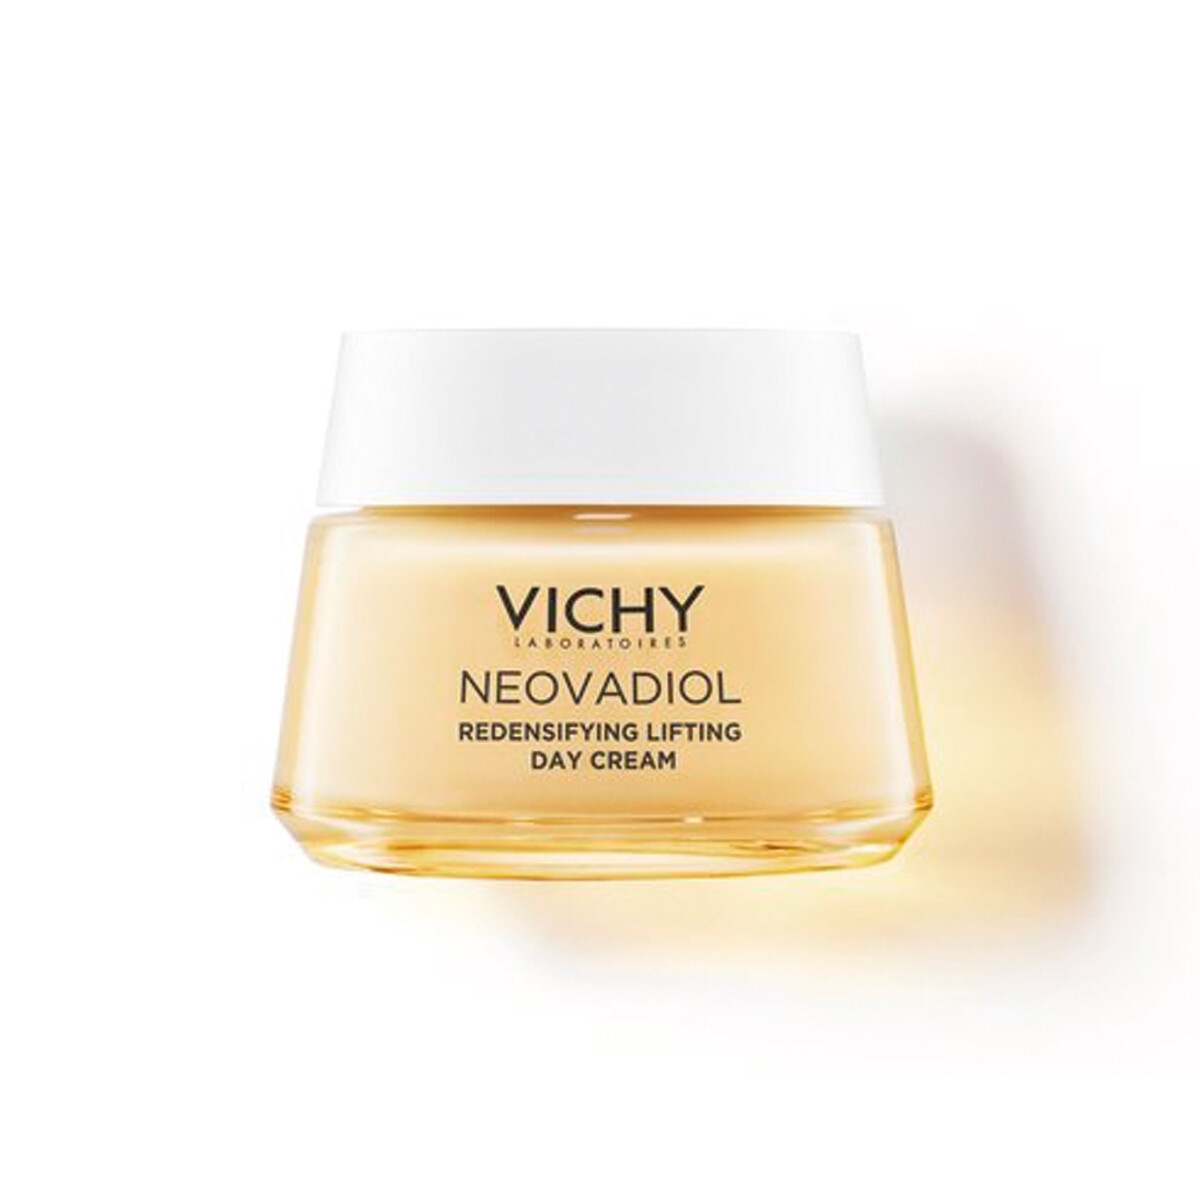 Crema Vichy Neovadiol Peri-Menopausia Piel Normal a Mixta - 50 ml 